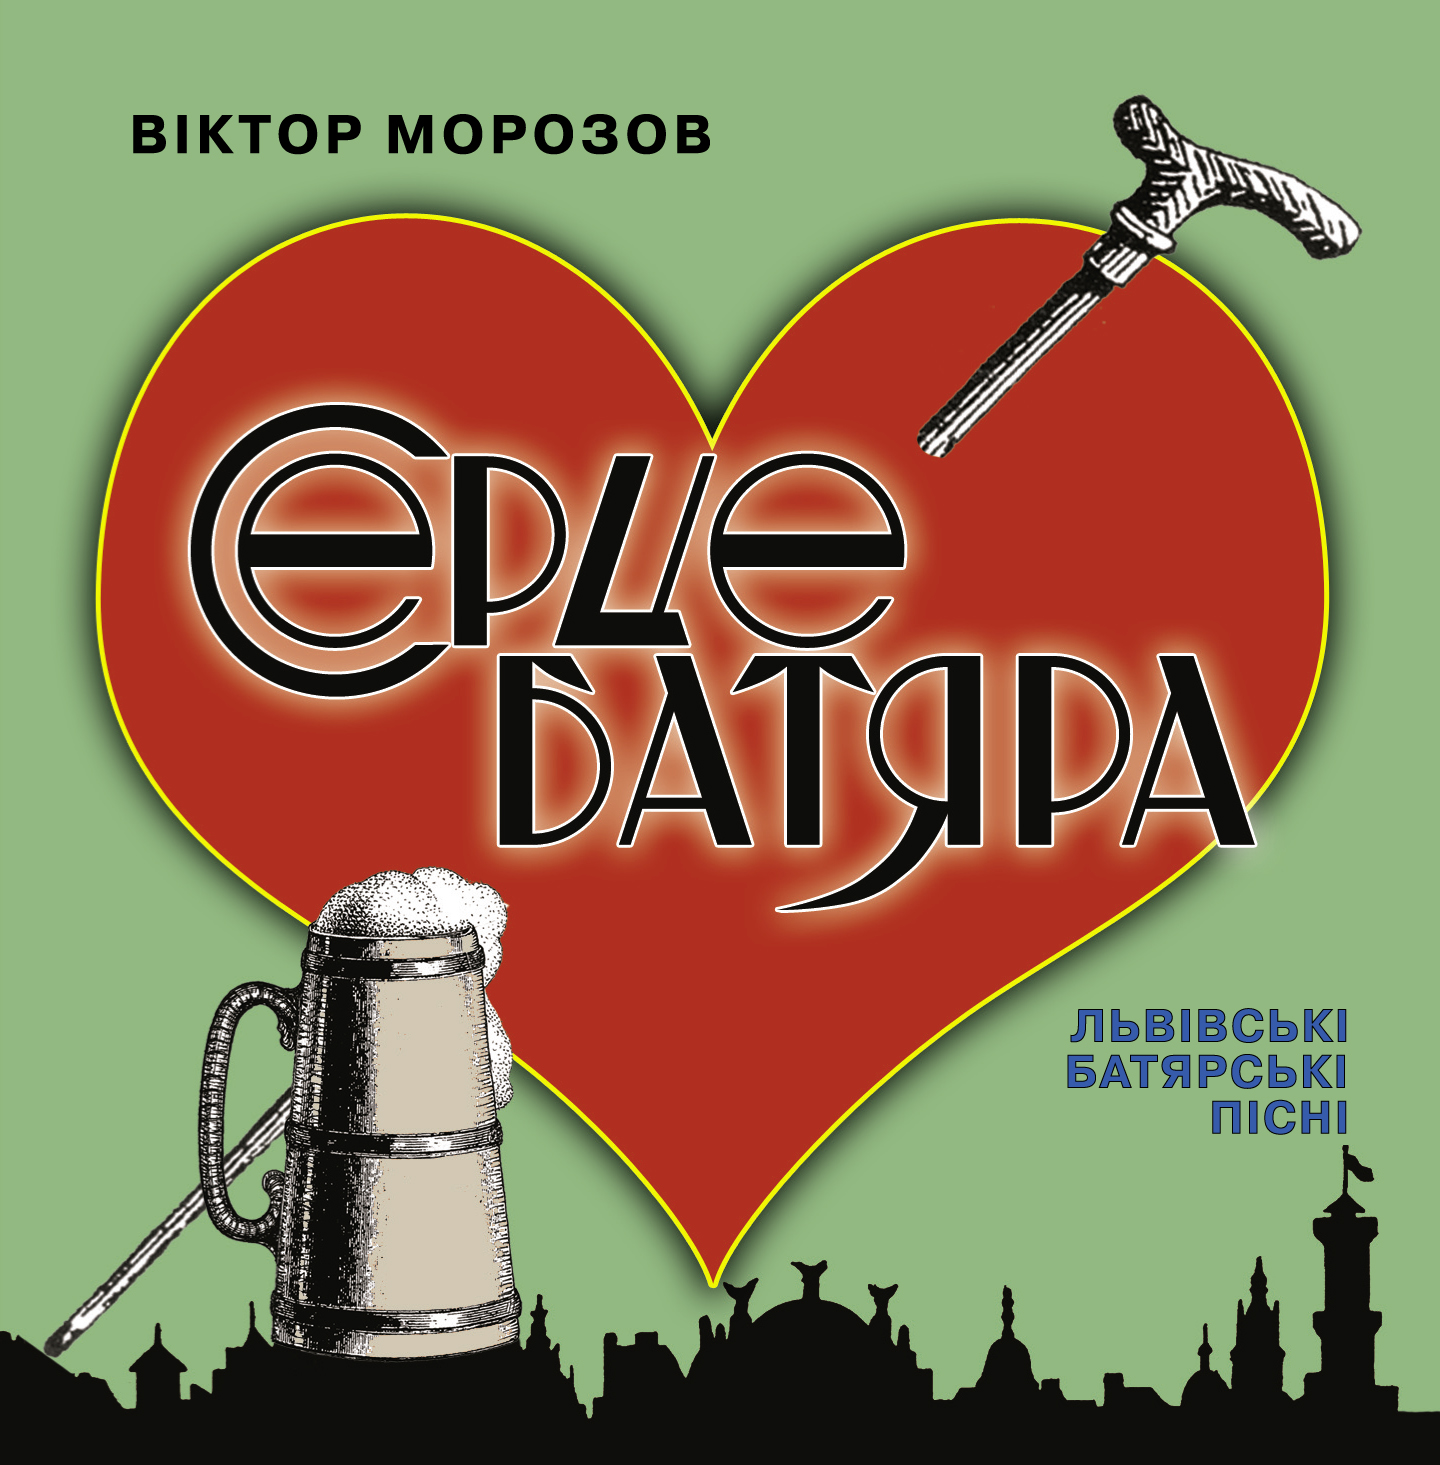 A Batiar's Heart CD
                  Cover